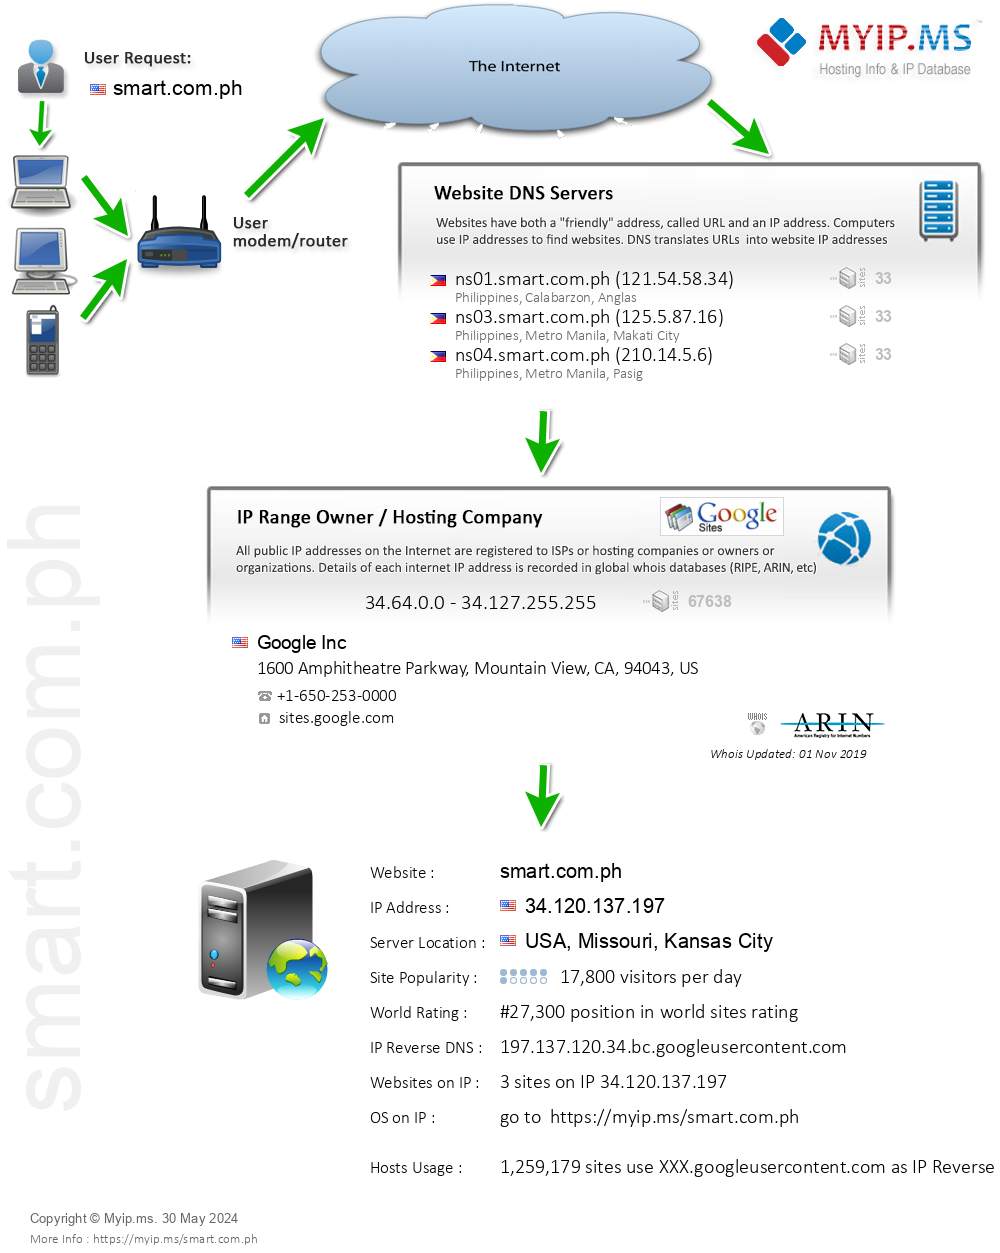 Smart.com.ph - Website Hosting Visual IP Diagram